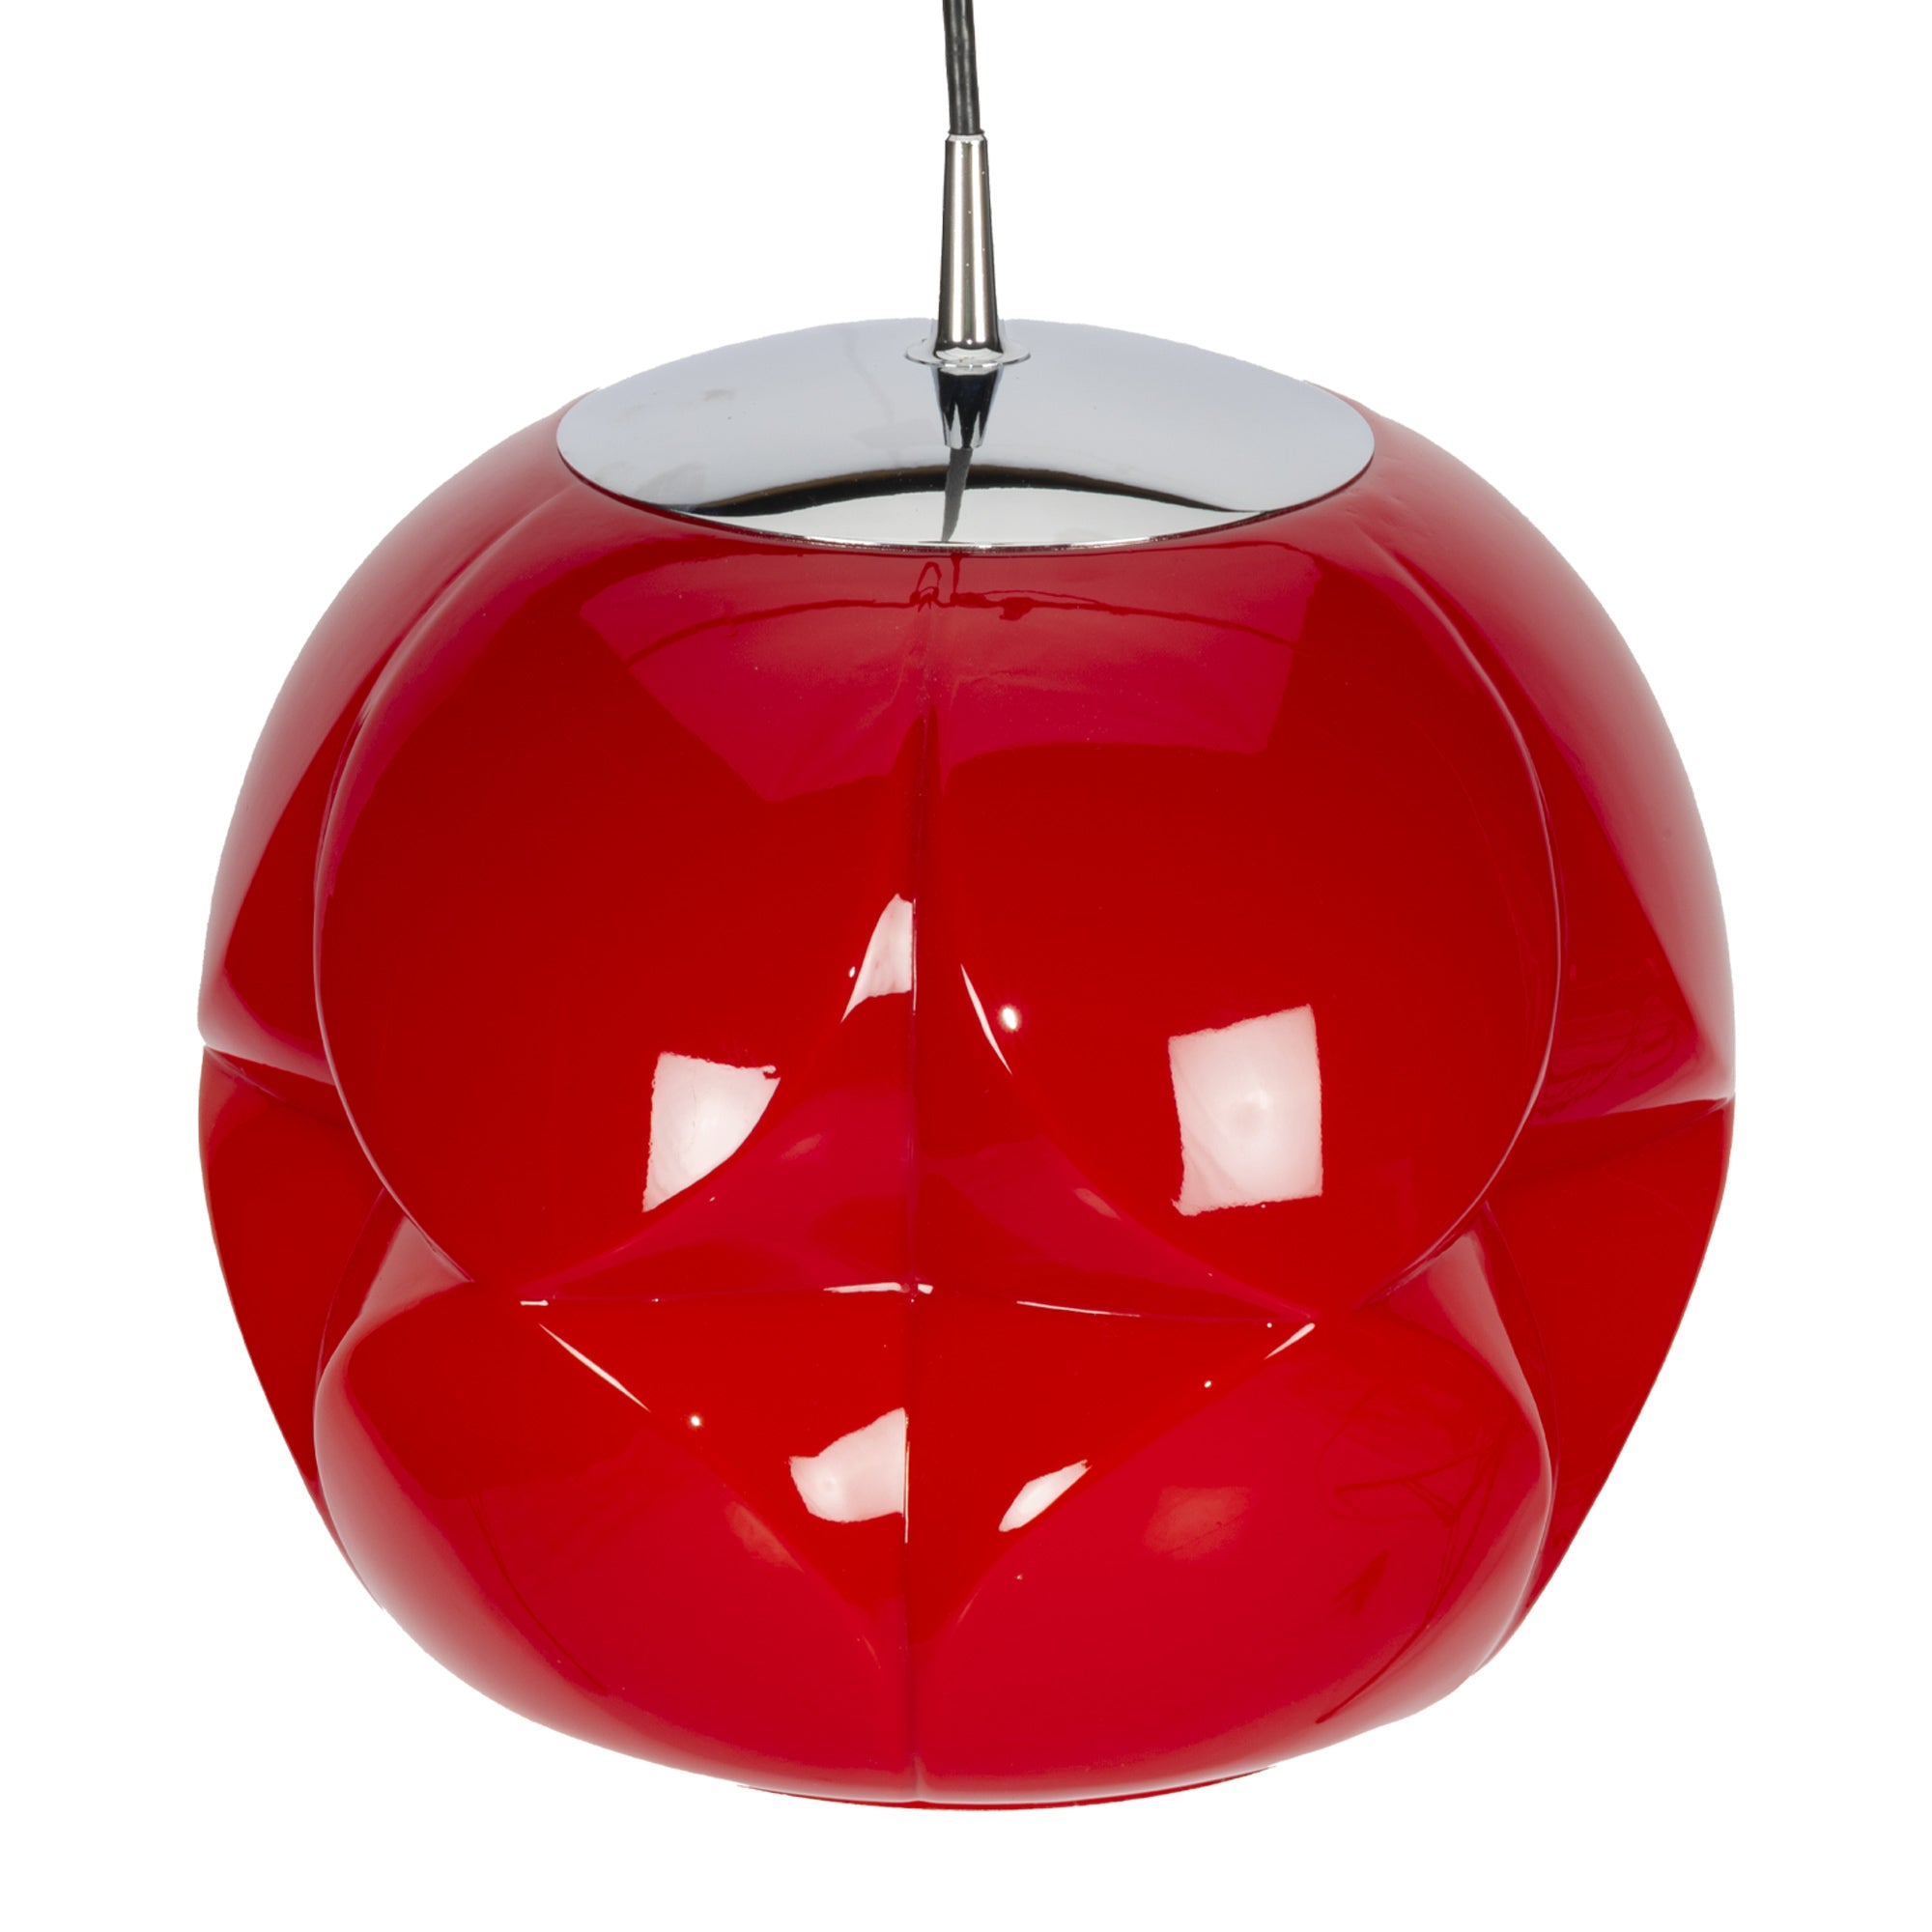 Red Peil & Putzler Pendant Lamp